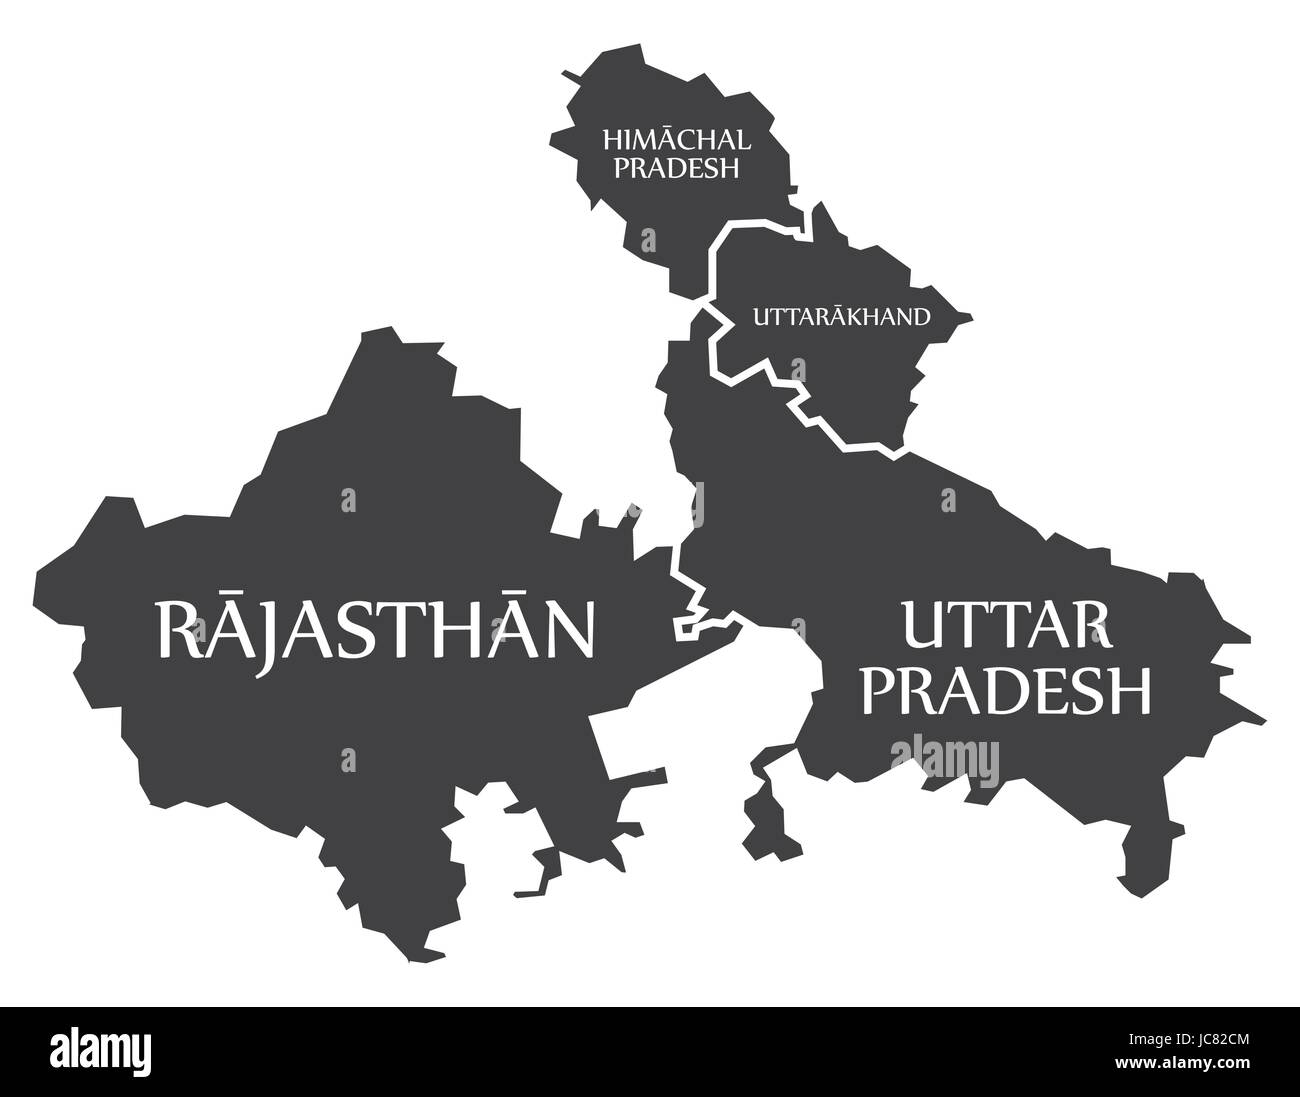 Rajasthan - Staaten Himachal Pradesh - Uttarakhand - Uttar Pradesh Karte Illustration of Indian Stock Vektor